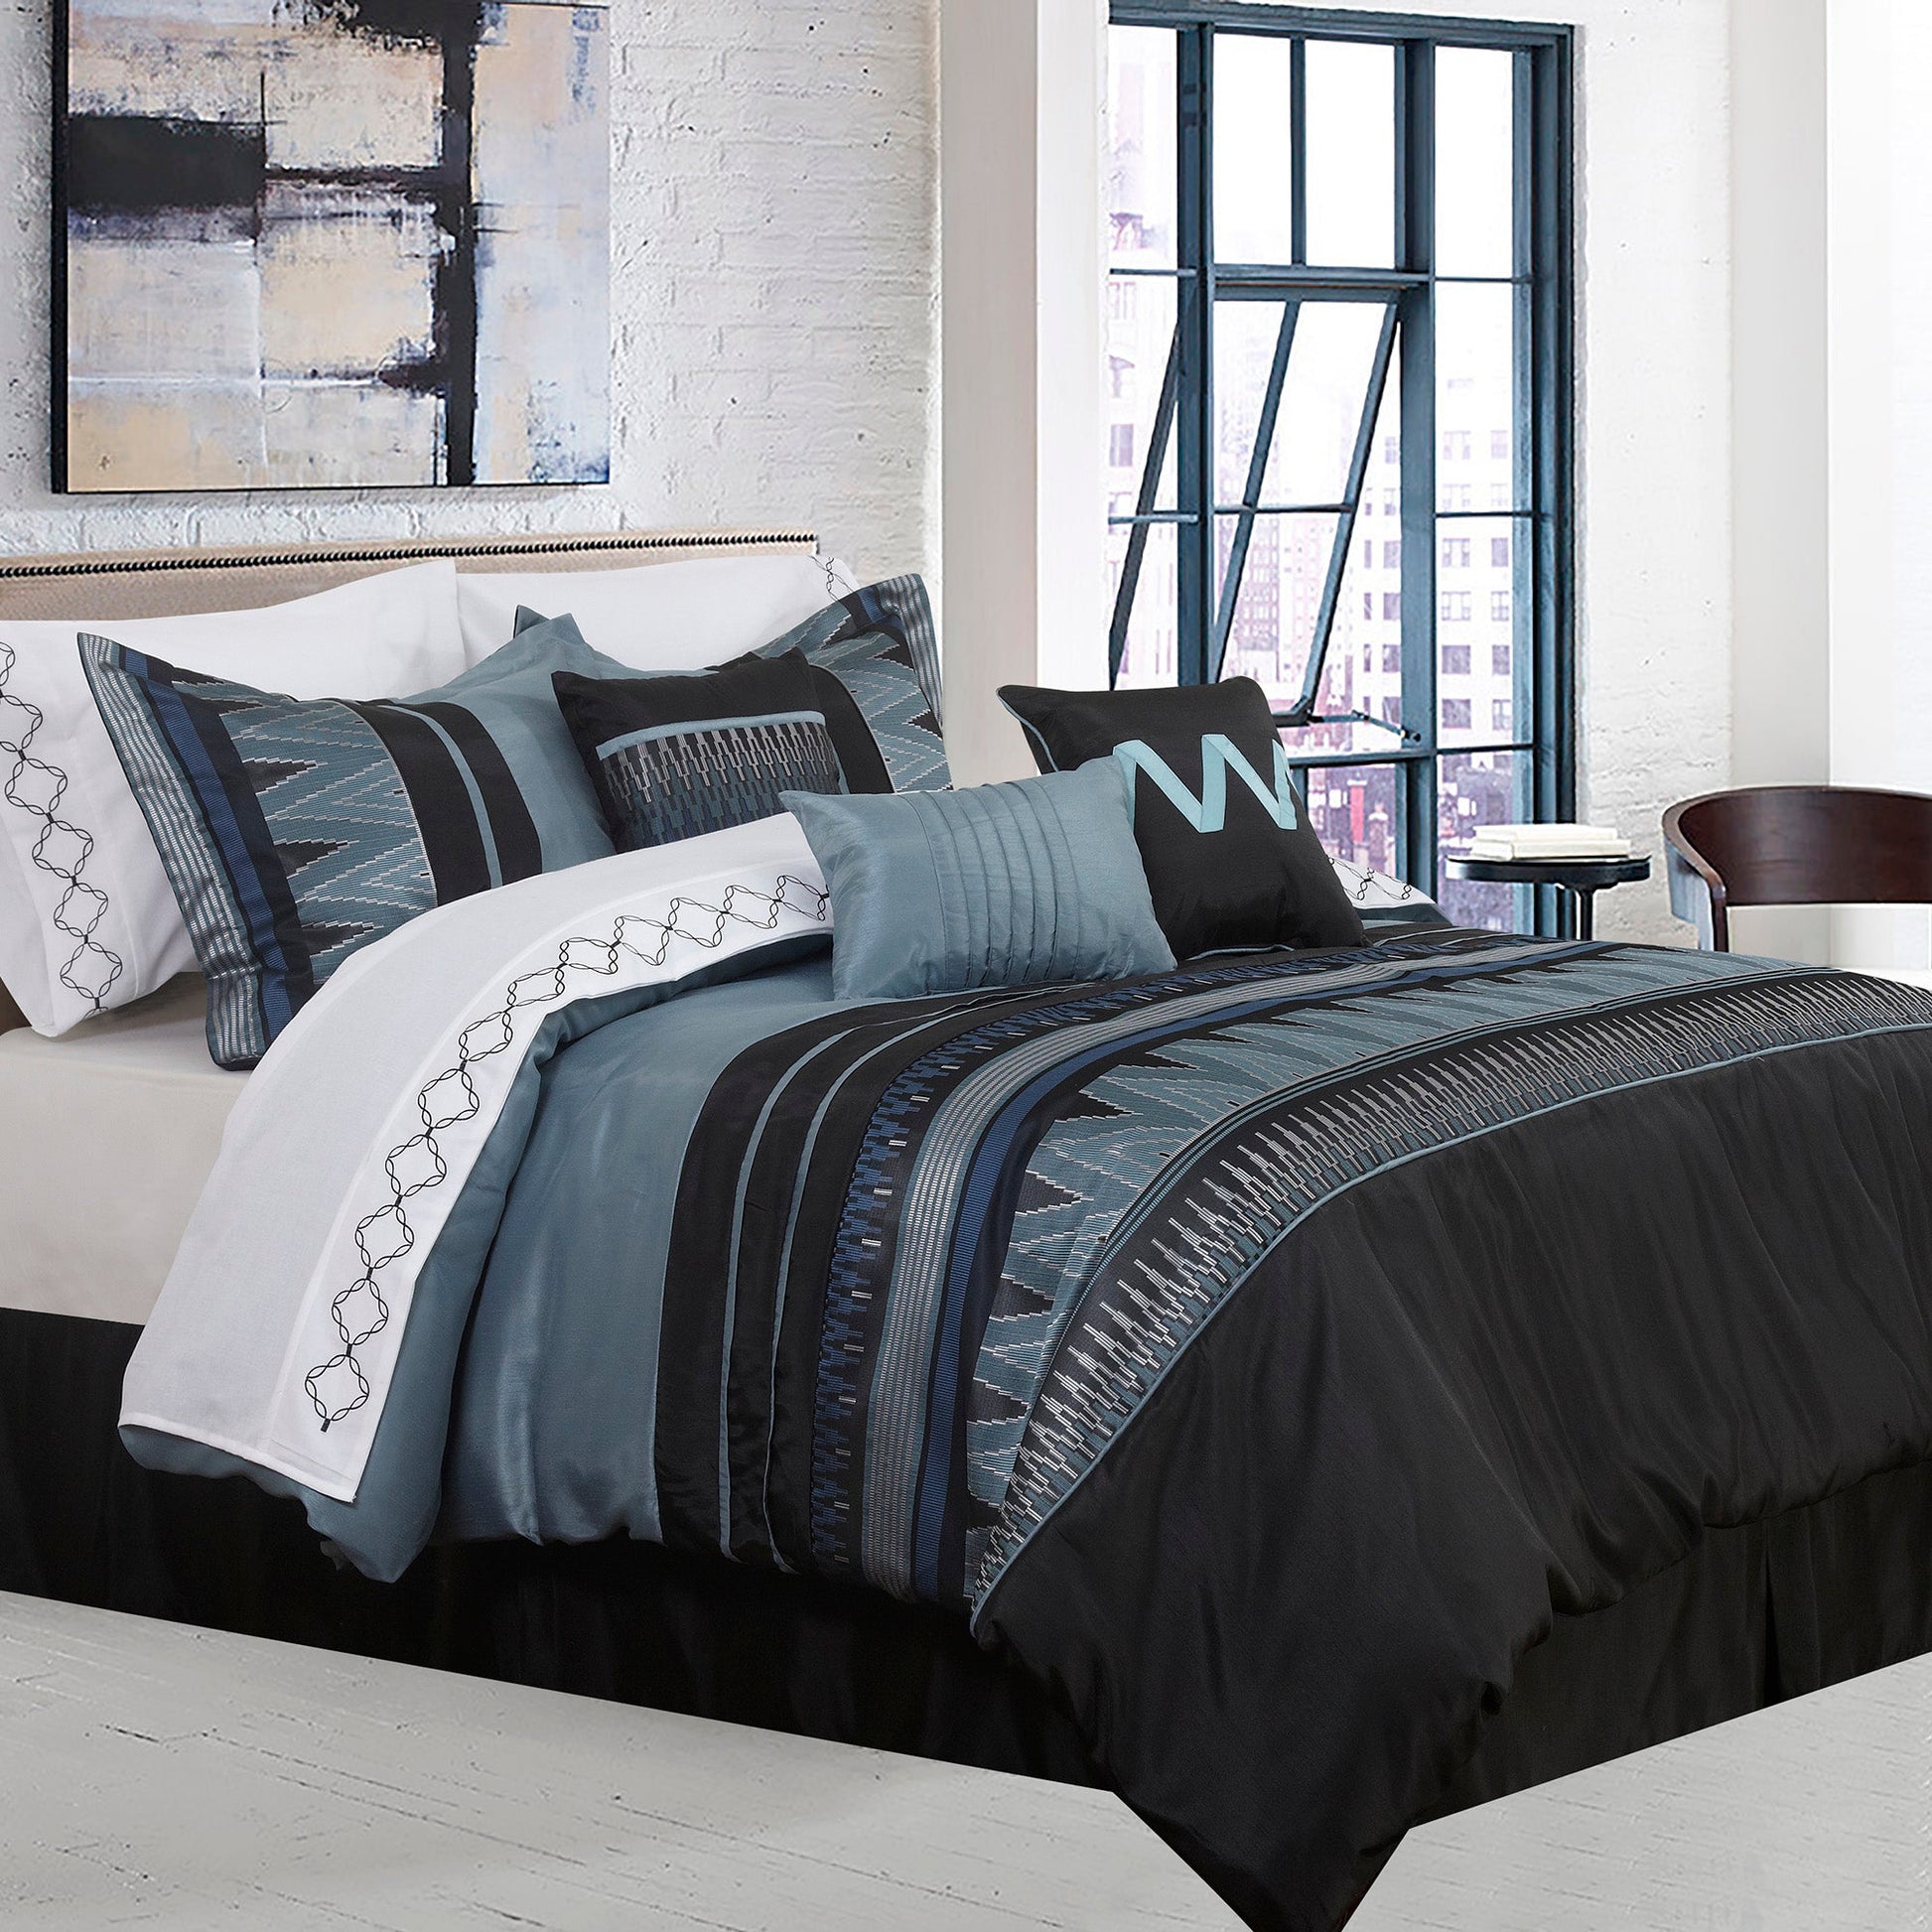 Comforter 7 Piece Set Vanguard D Black - DecoElegance - Bedding Comforter Set